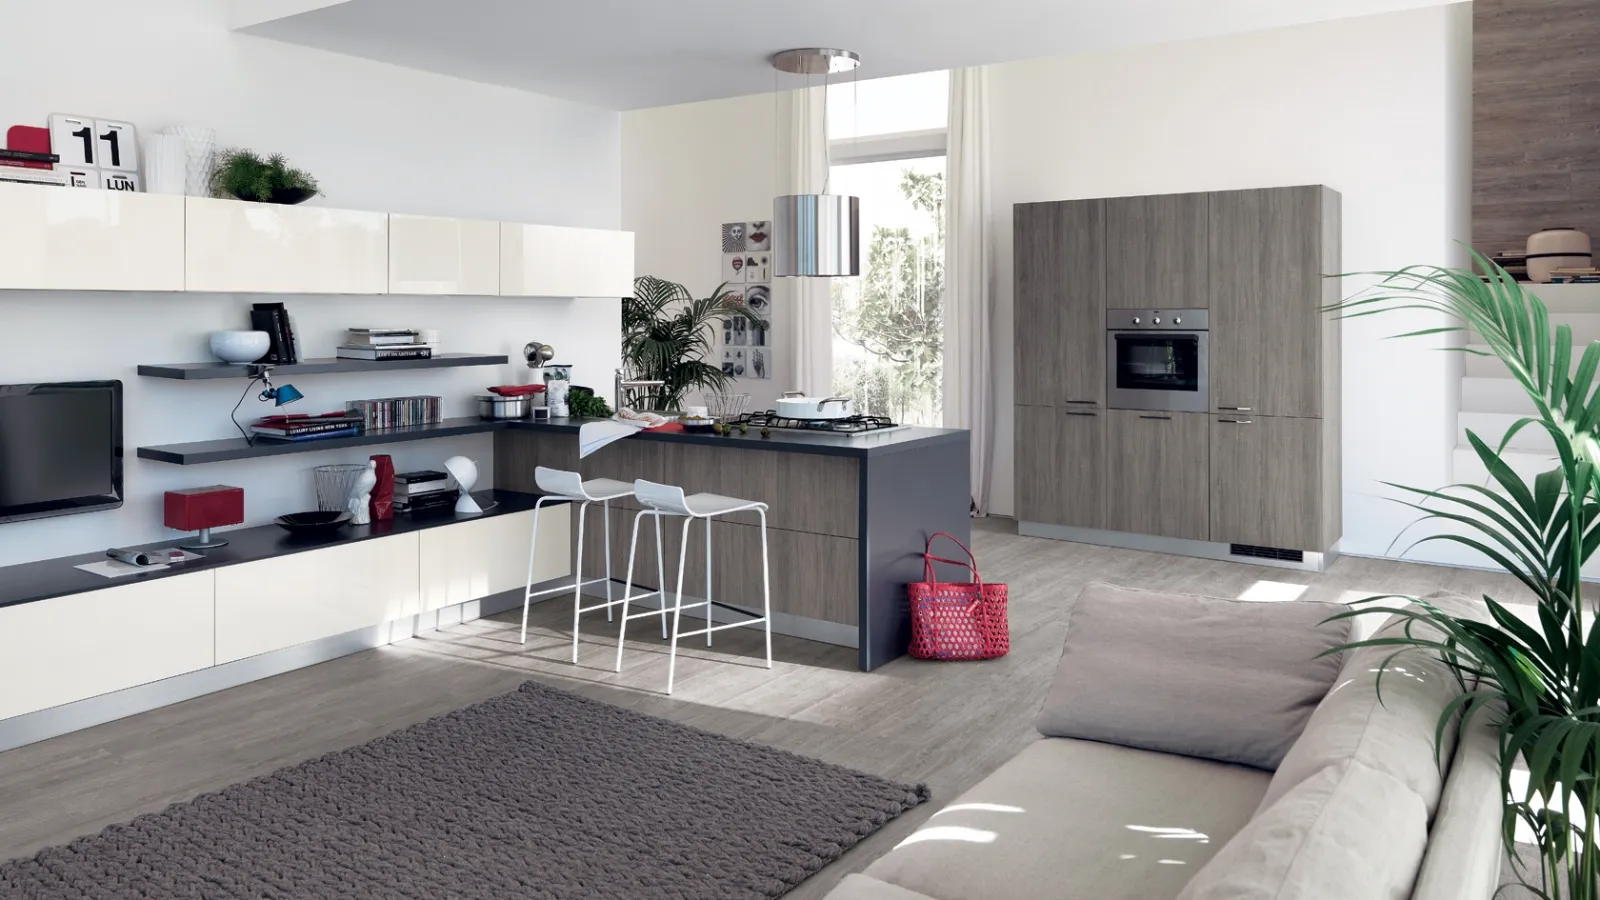 Arredare soggiorno cucina, idee per l'open space - Cucine ...